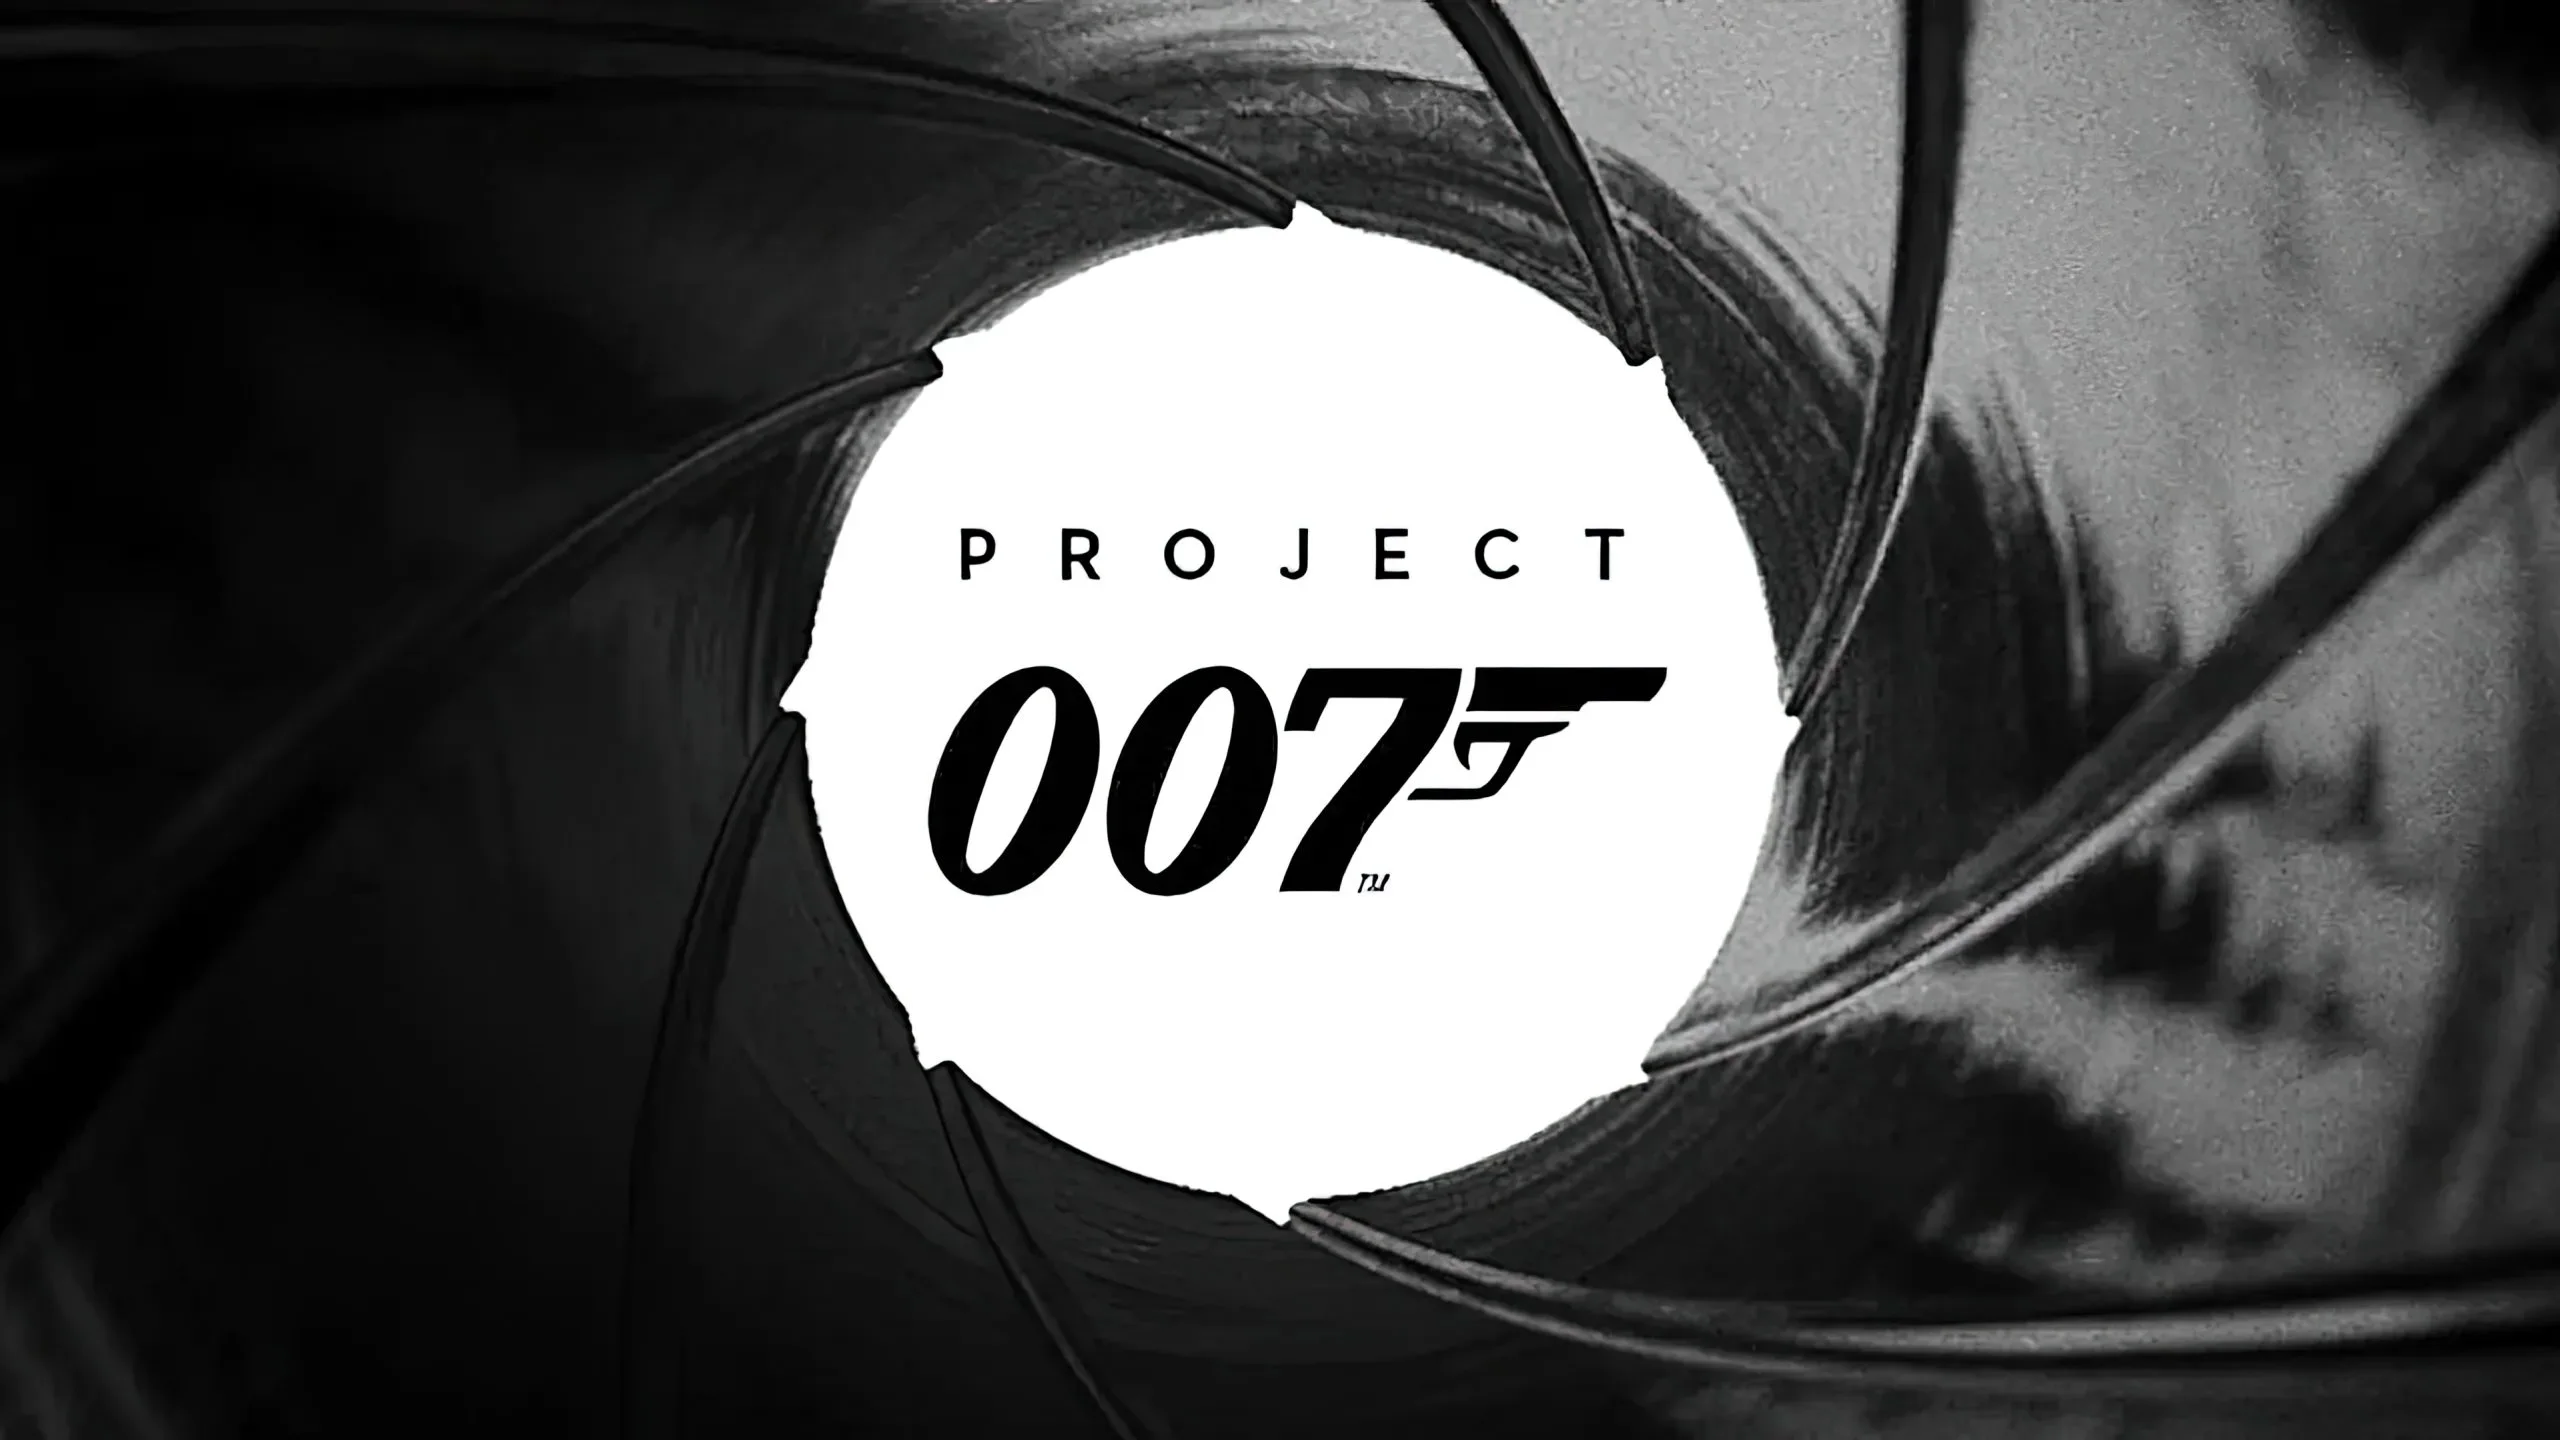 هر آنچه درباره بازی Project 007 می دانیم